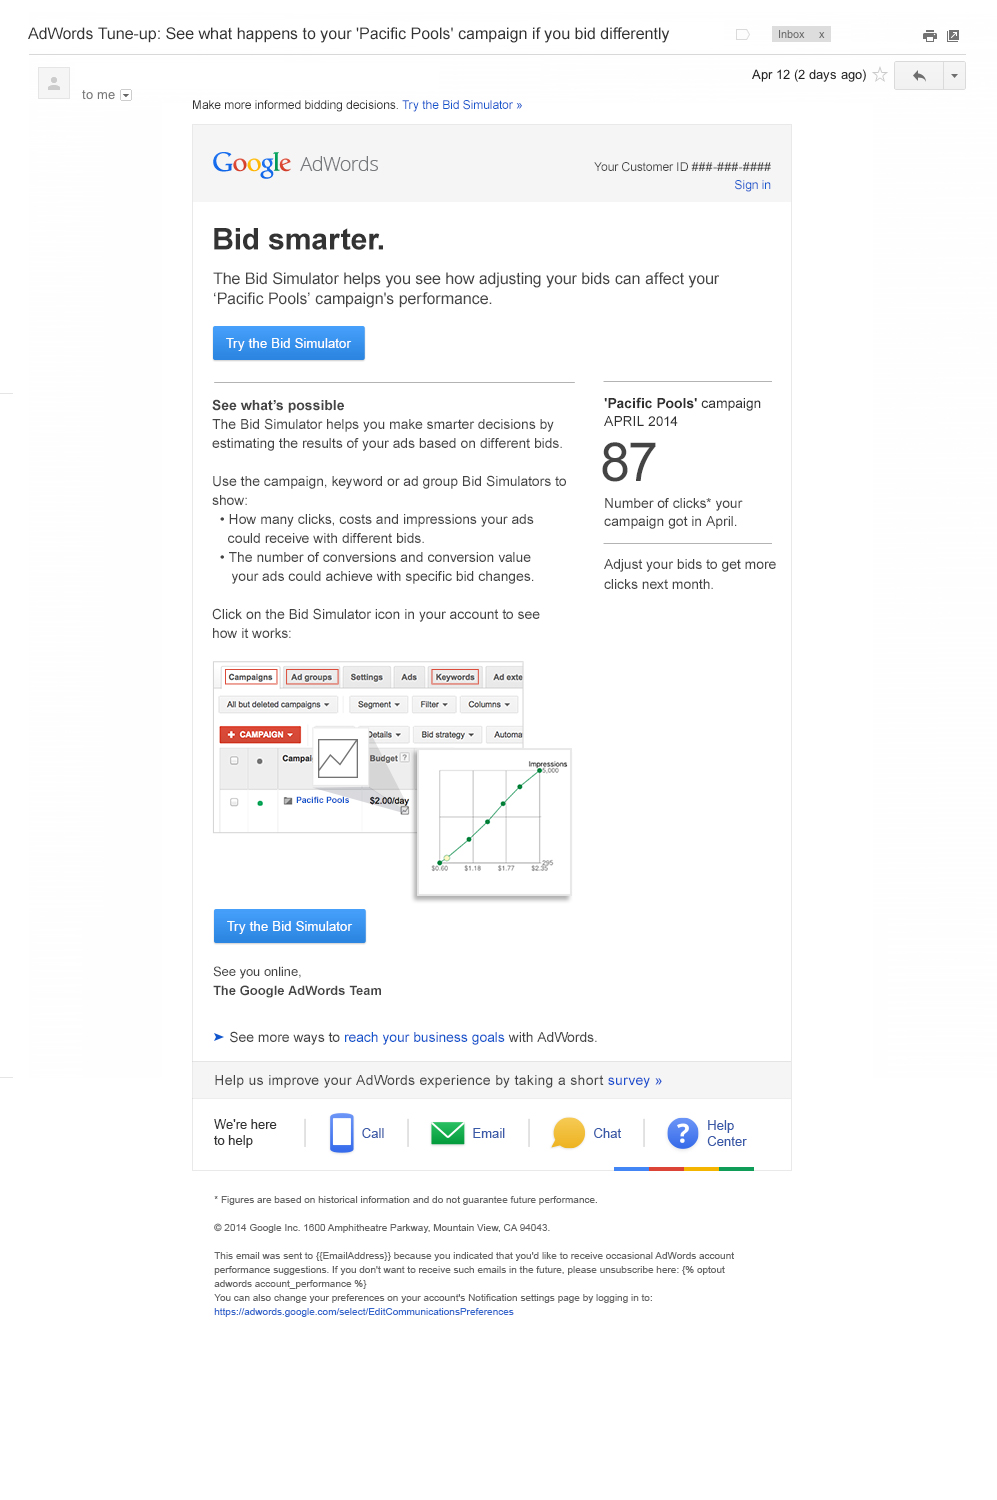 Boe Gatiss - AdWords Bid Simulator email for Google